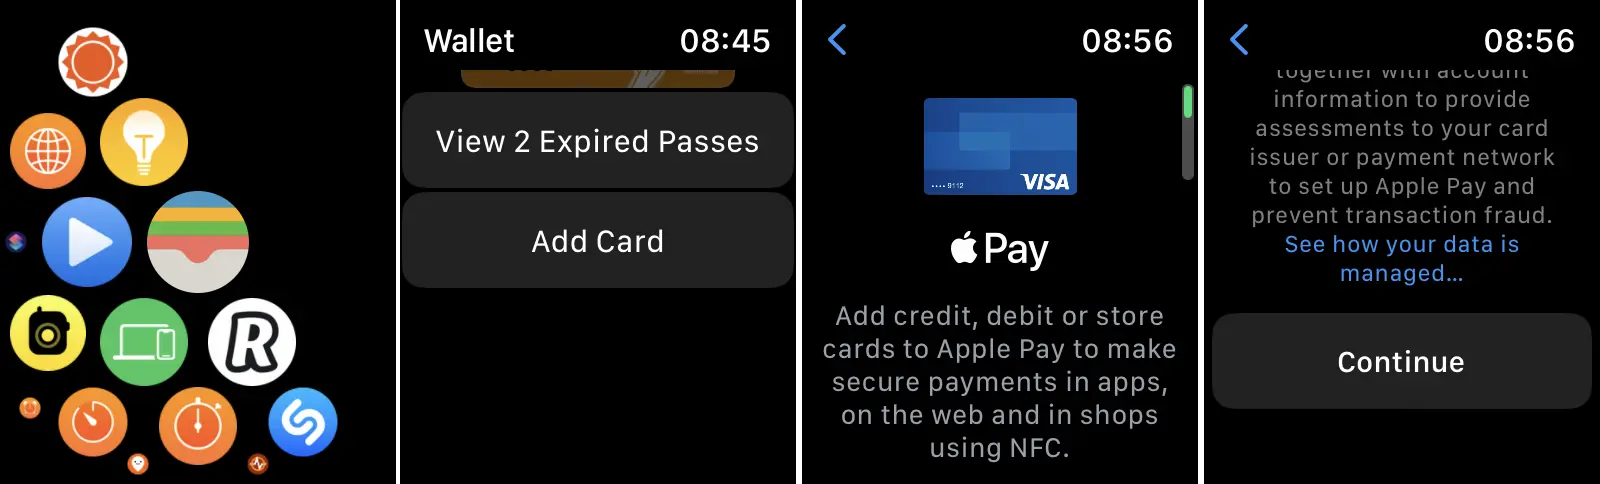 Como adicionar cartões bancários ao Apple Pay para Apple Watch?